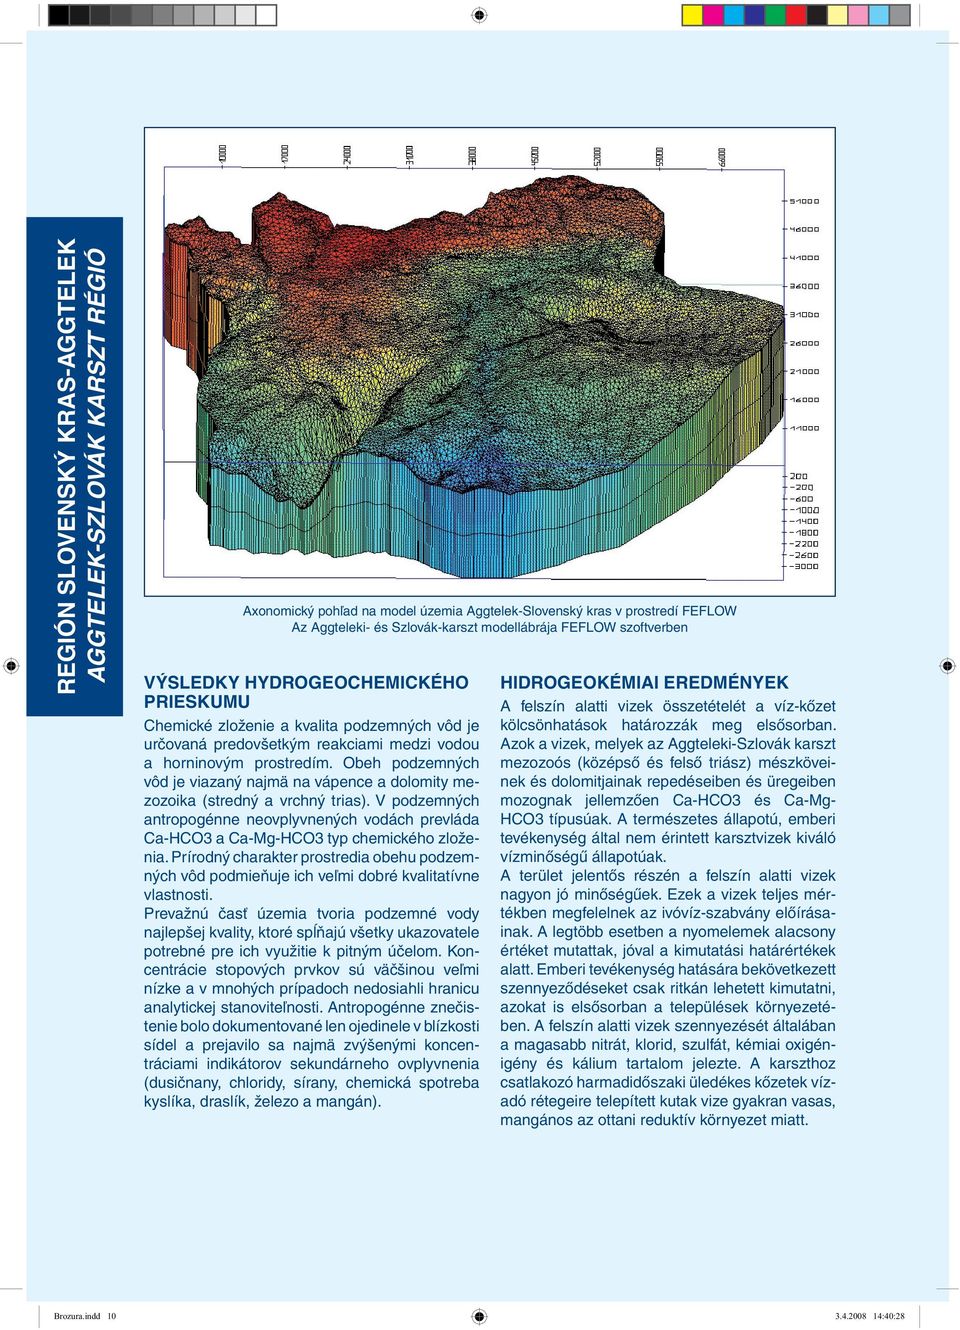 Obeh podzemných vôd je viazaný najmä na vápence a dolomity mezozoika (stredný a vrchný trias). V podzemných antropogénne neovplyvnených vodách prevláda Ca-HCO3 a Ca-Mg-HCO3 typ chemického zloženia.